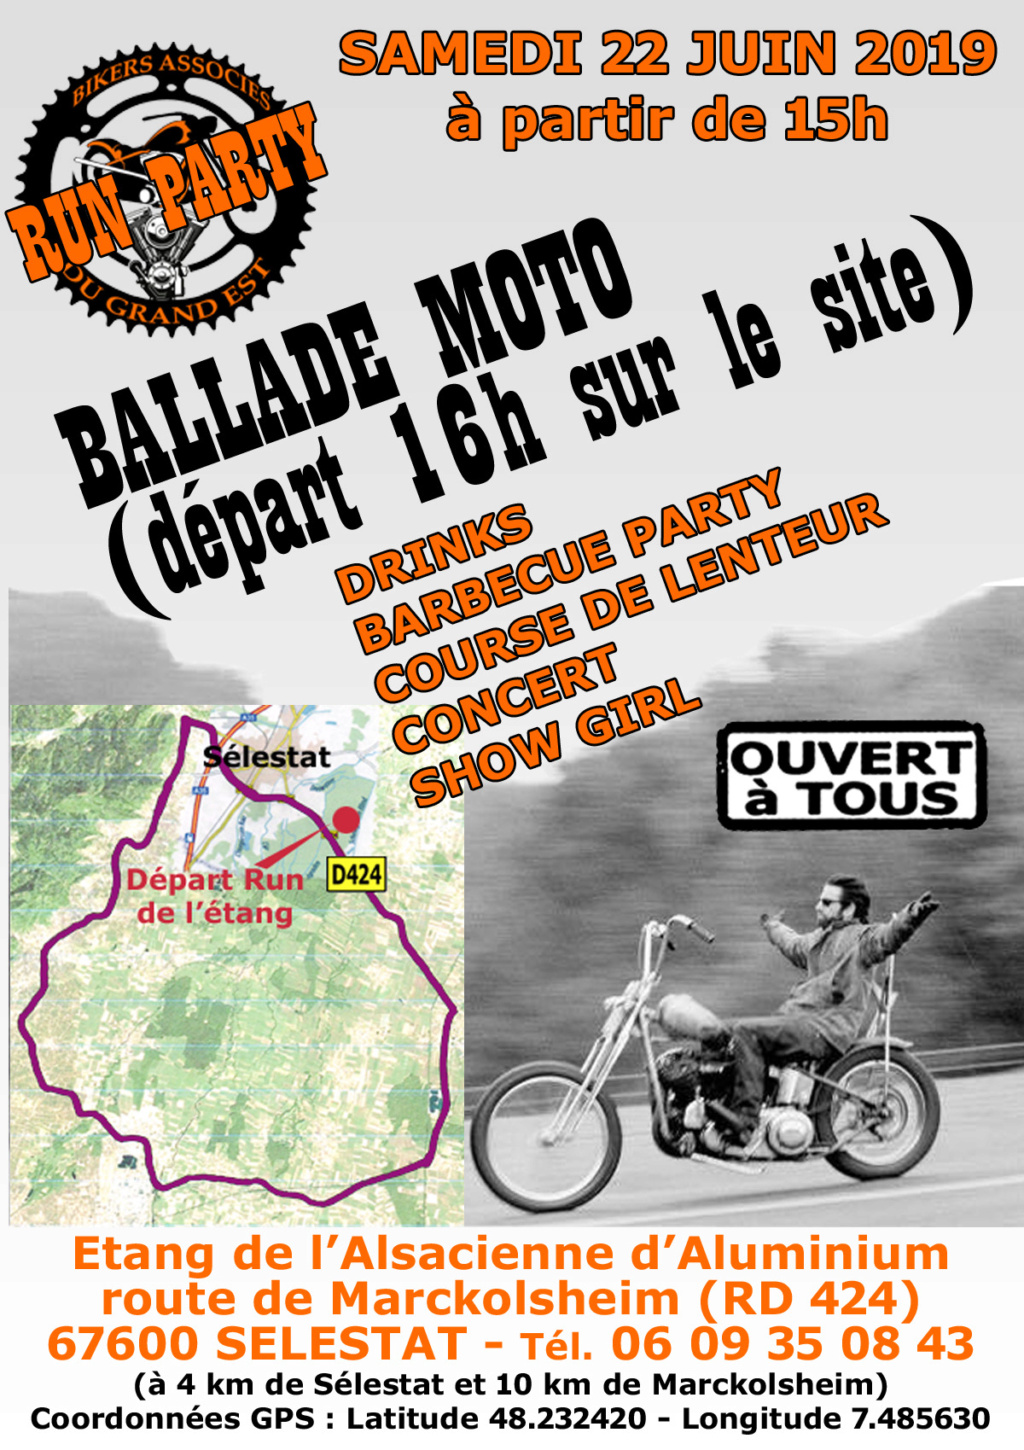 EVENEMENTS MOTOS ANCIENNES Calendrier évènementiel des Grands-Mères Motos Montmorillonnaises 2019se13